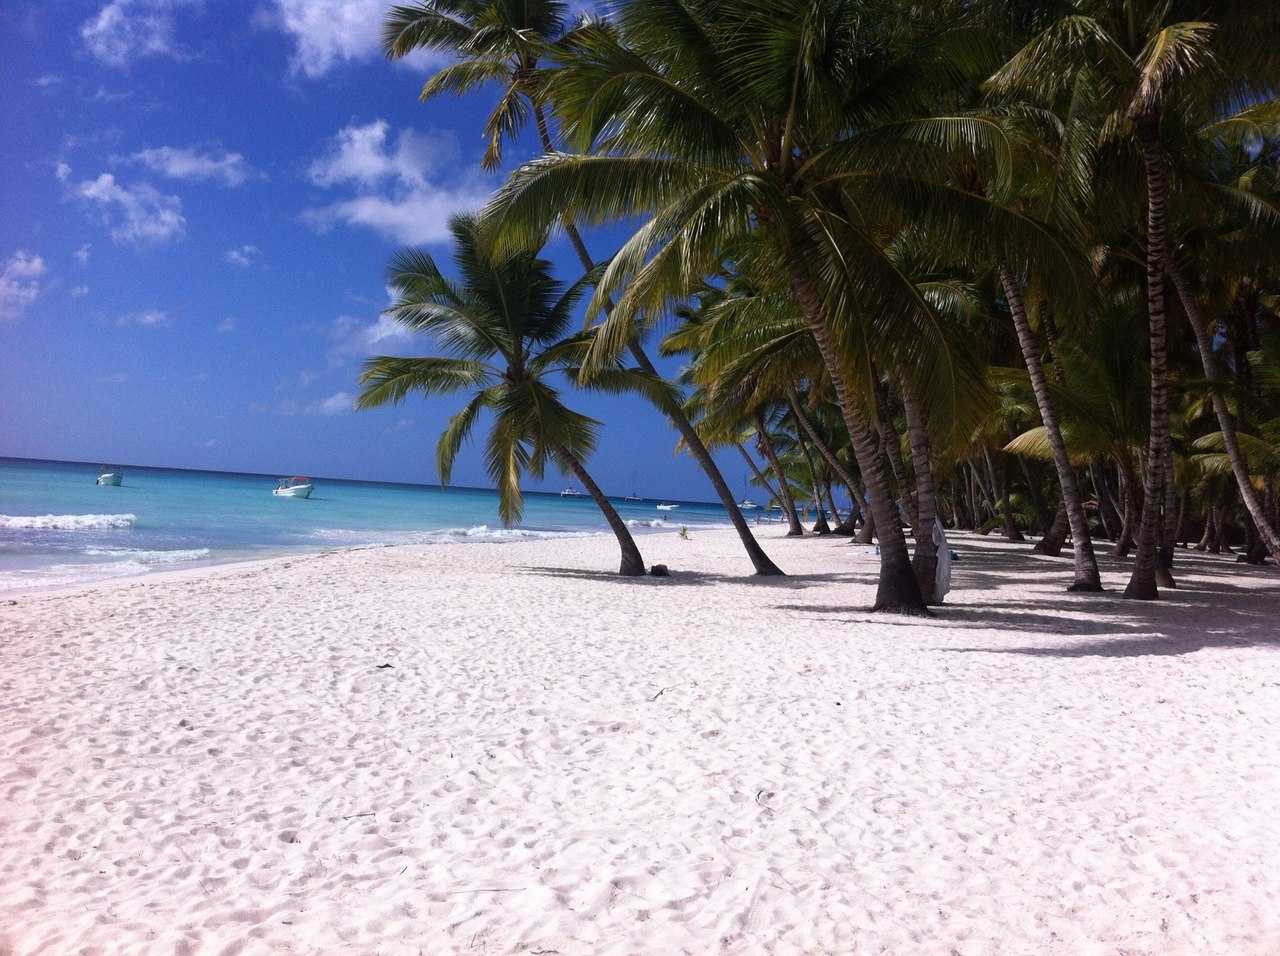 Курорты в доминикане куда лучше поехать: что лучше бока чика или пунта кана?